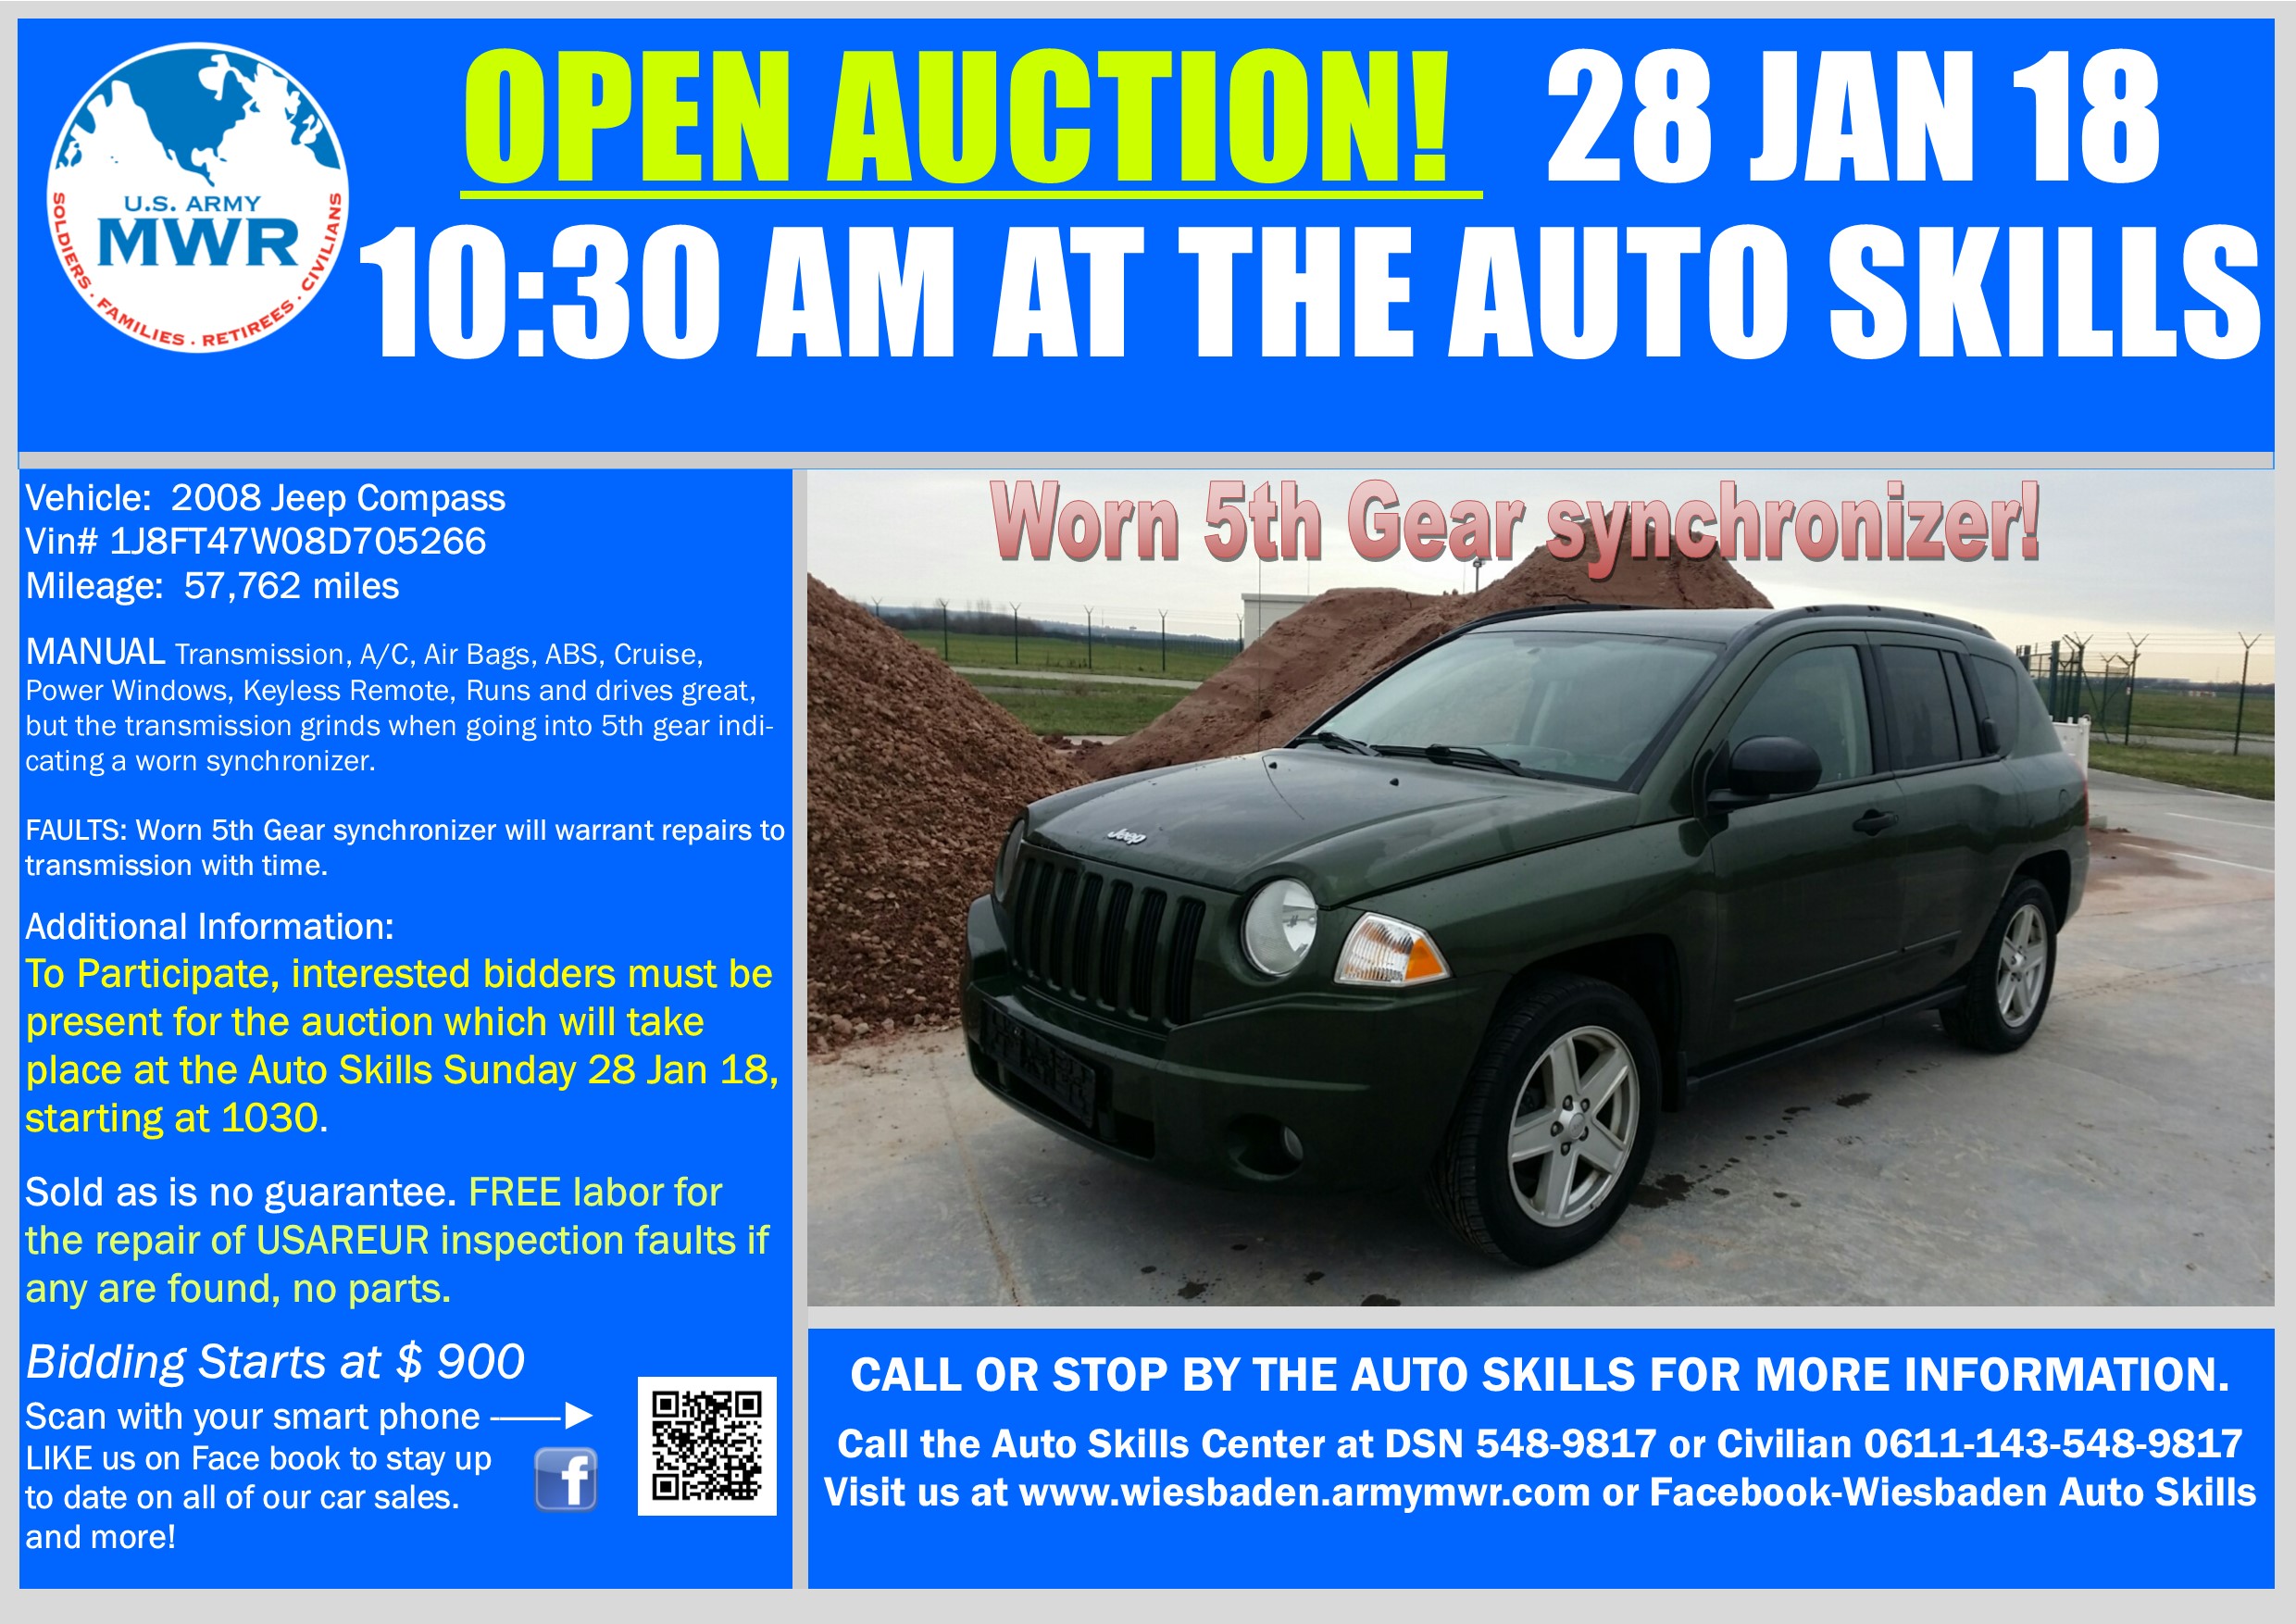 Sale_Jeep Compass 28  Jan 18 Open Auction.jpg